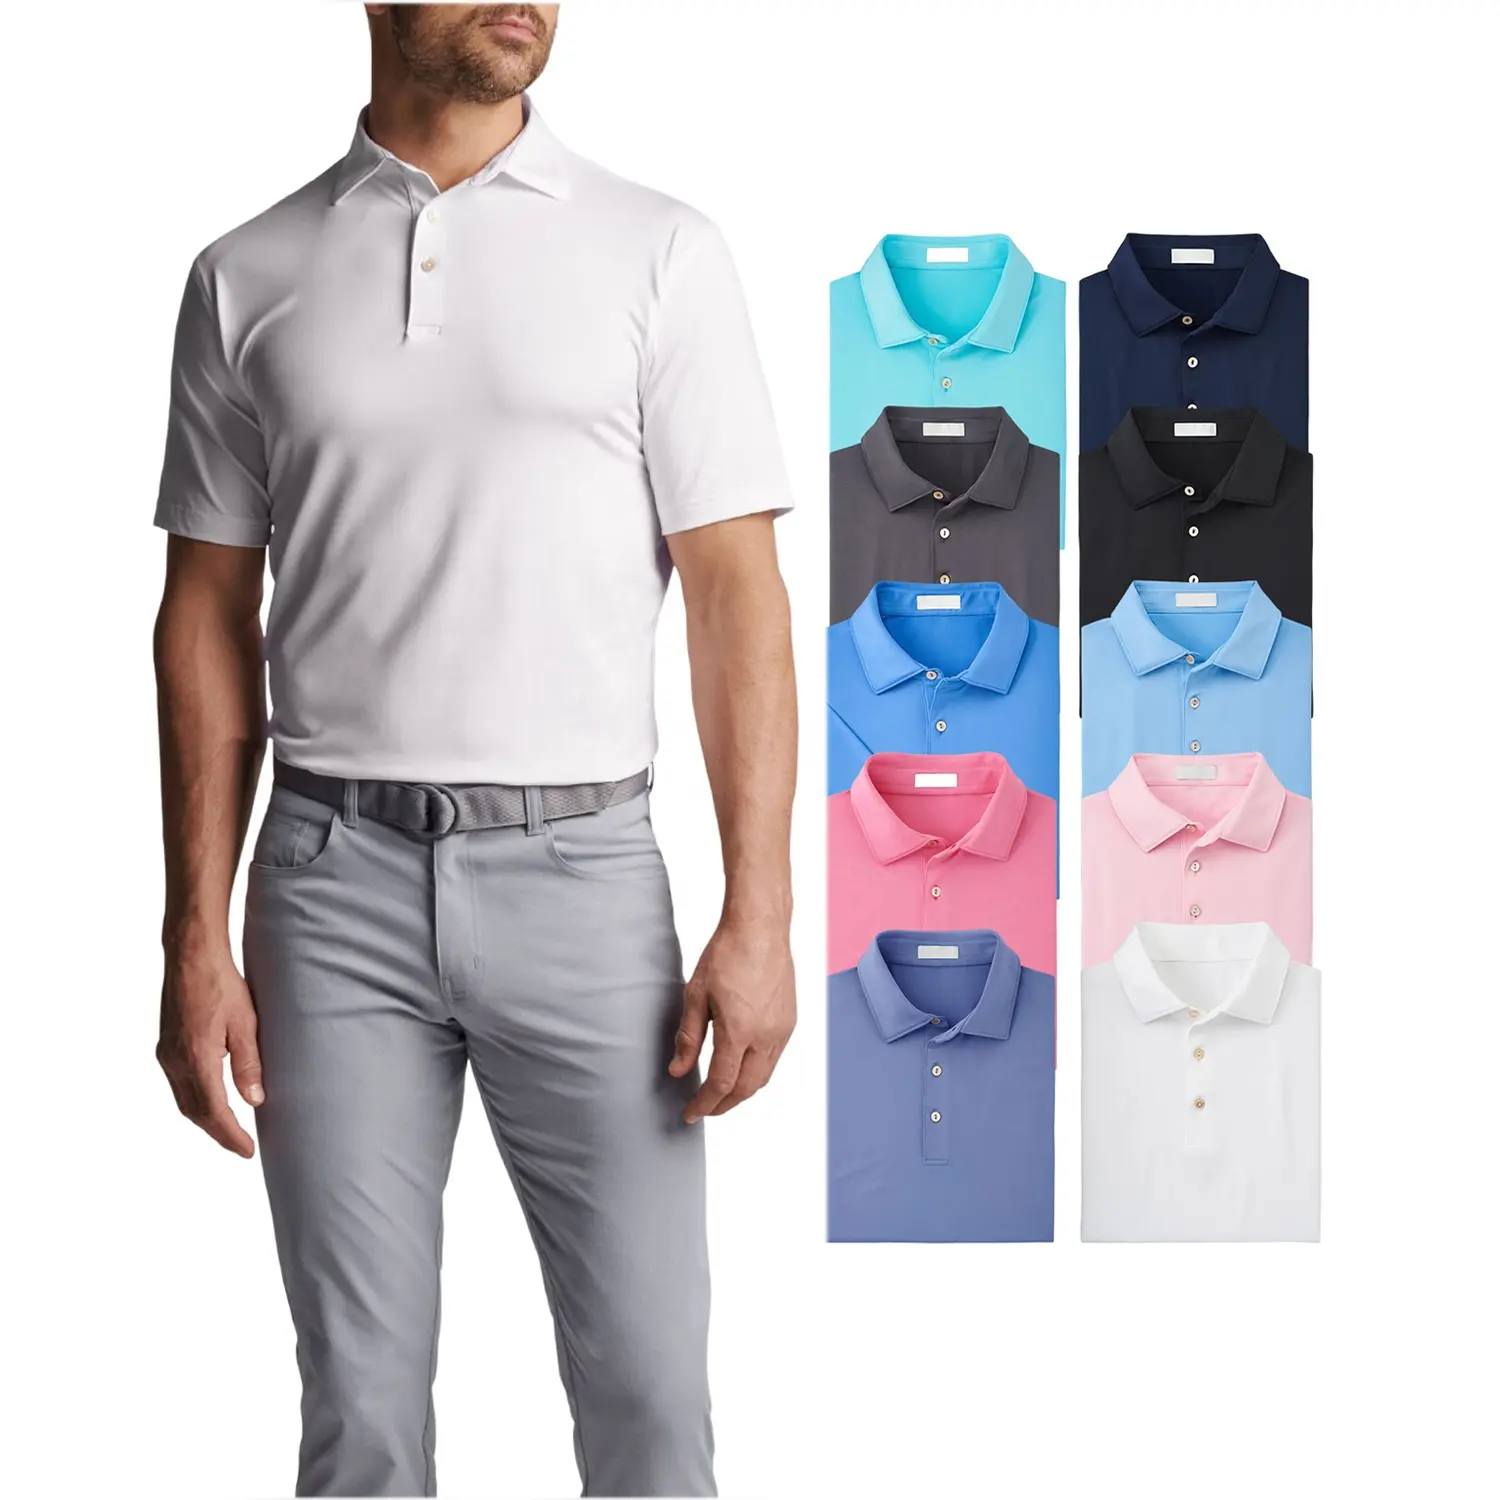 Logotipo personalizado Golf rendimiento en blanco sublimación camisas 100 poliéster blanco mercerizado algodón polos